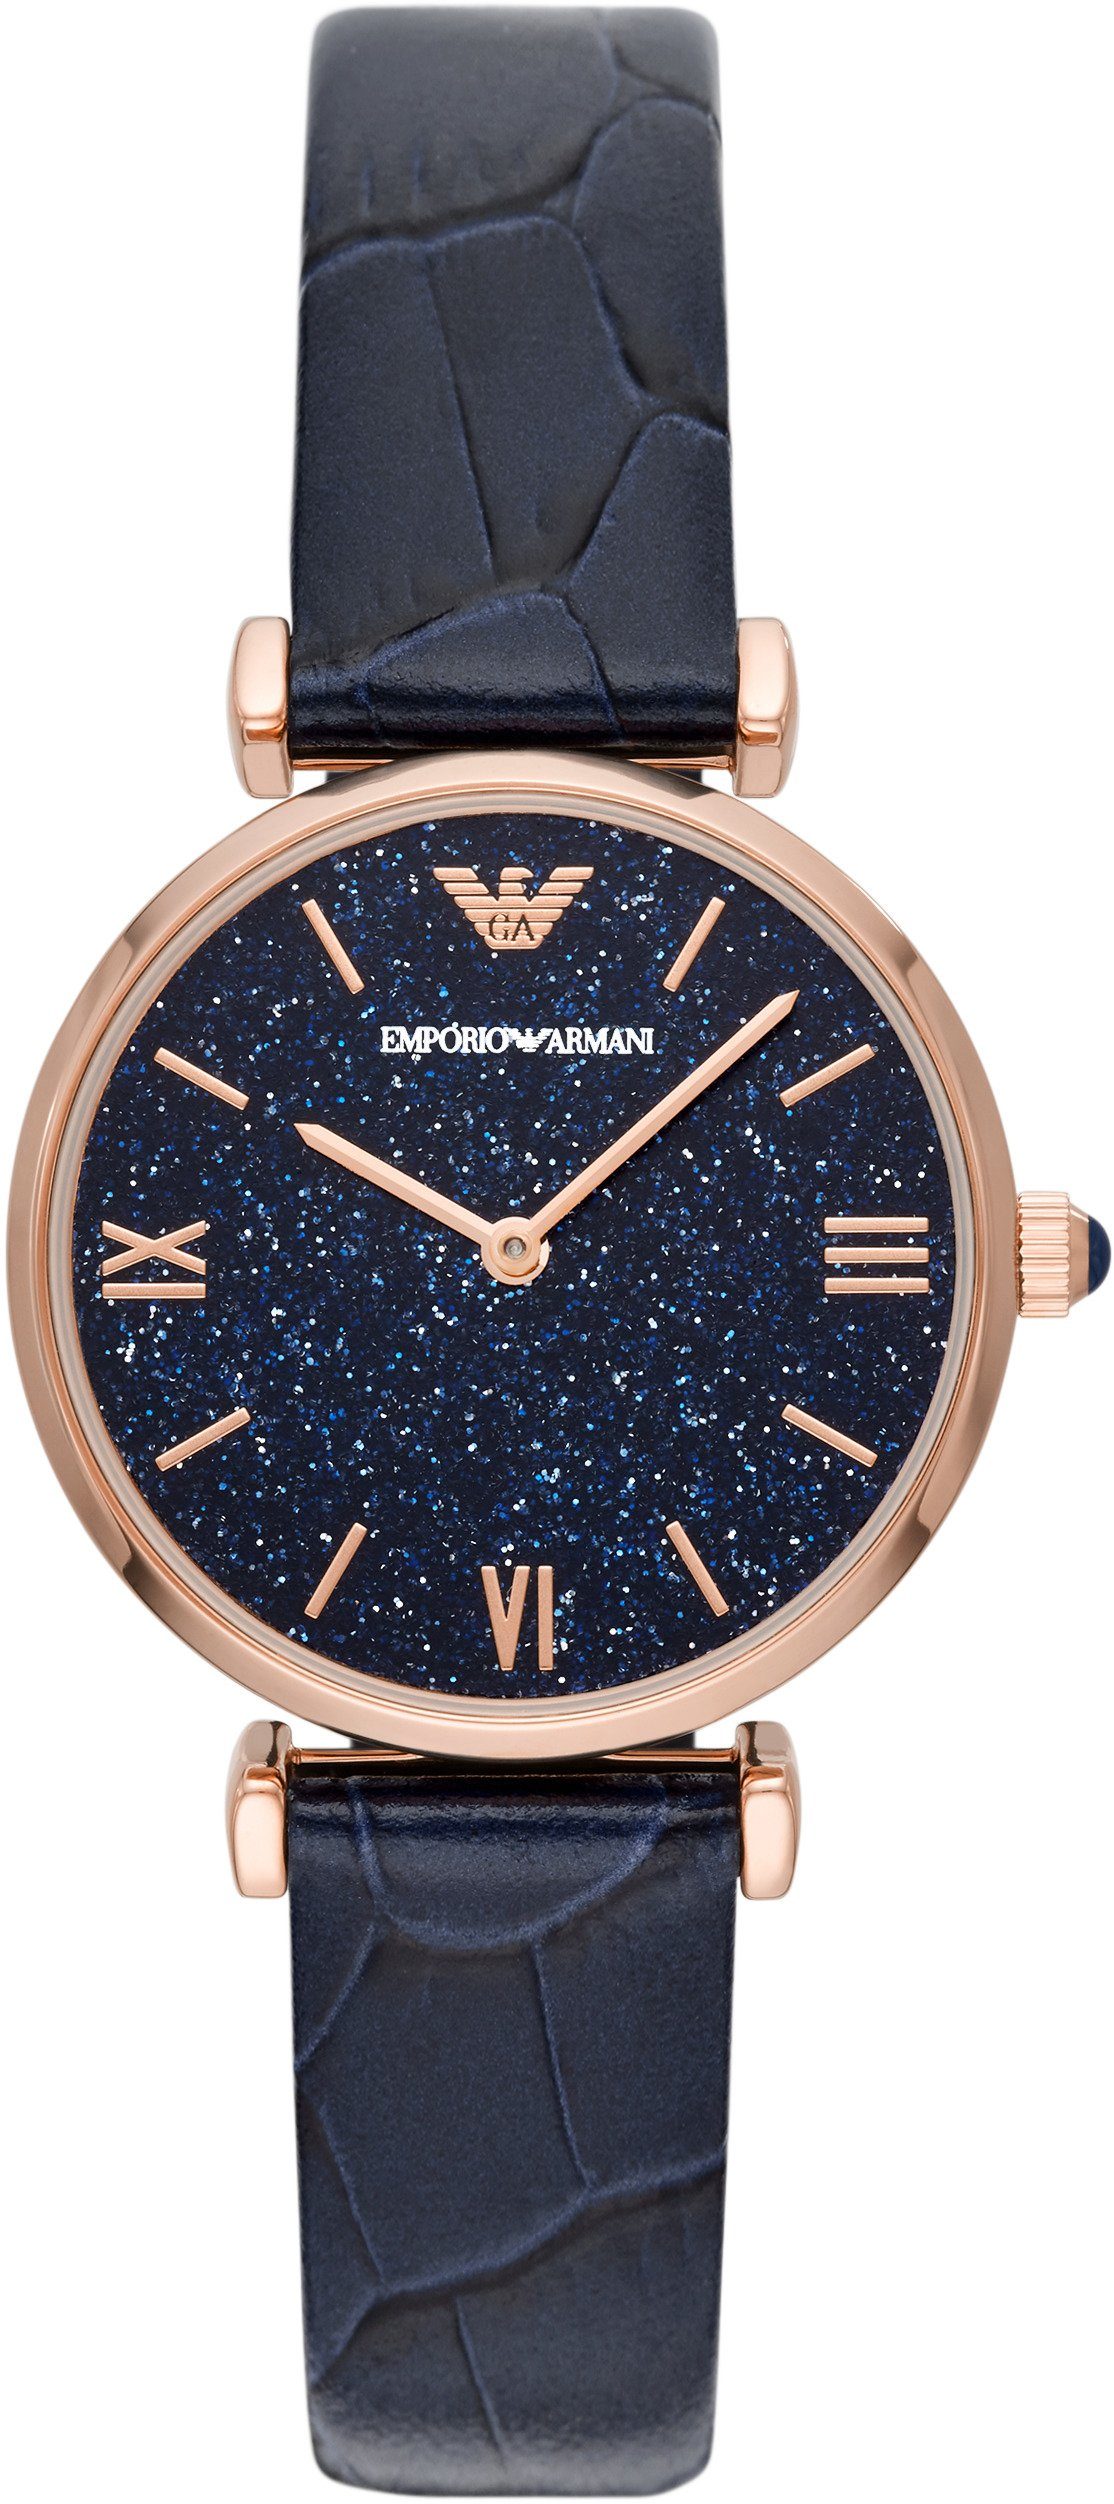 Blaue Emporio Armani Uhren online kaufen | OTTO